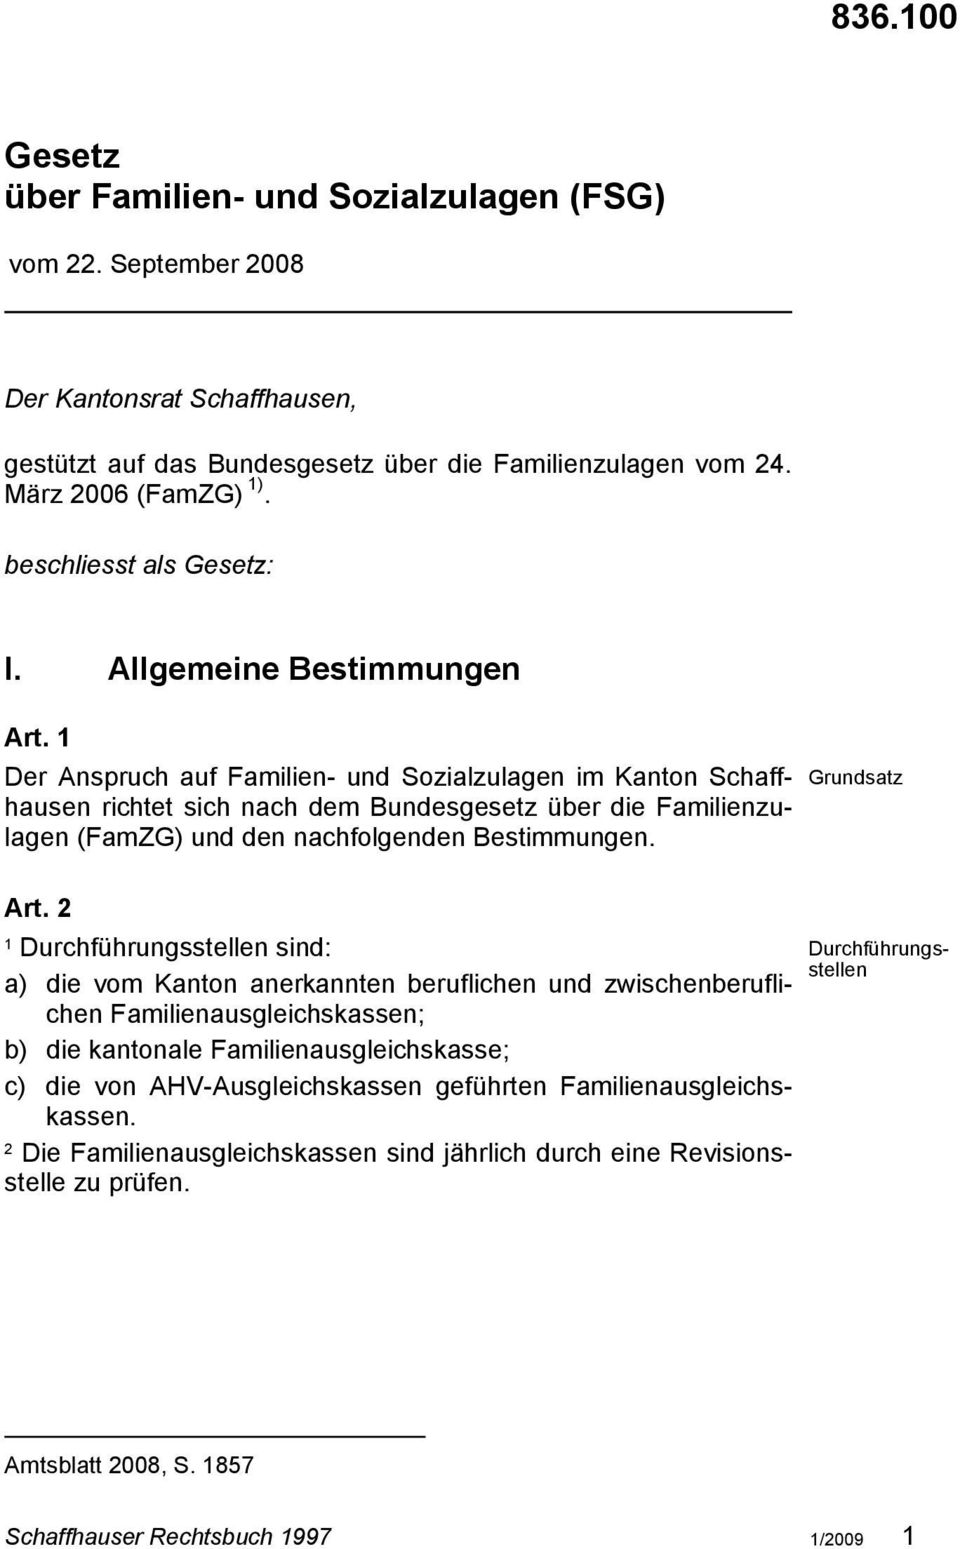 Der Anspruch auf Familien- und Sozialzulagen im Kanton Schaffhausen richtet sich nach dem Bundesgesetz über die Familienzulagen (FamZG) und den nachfolgenden Bestimmungen. Art.